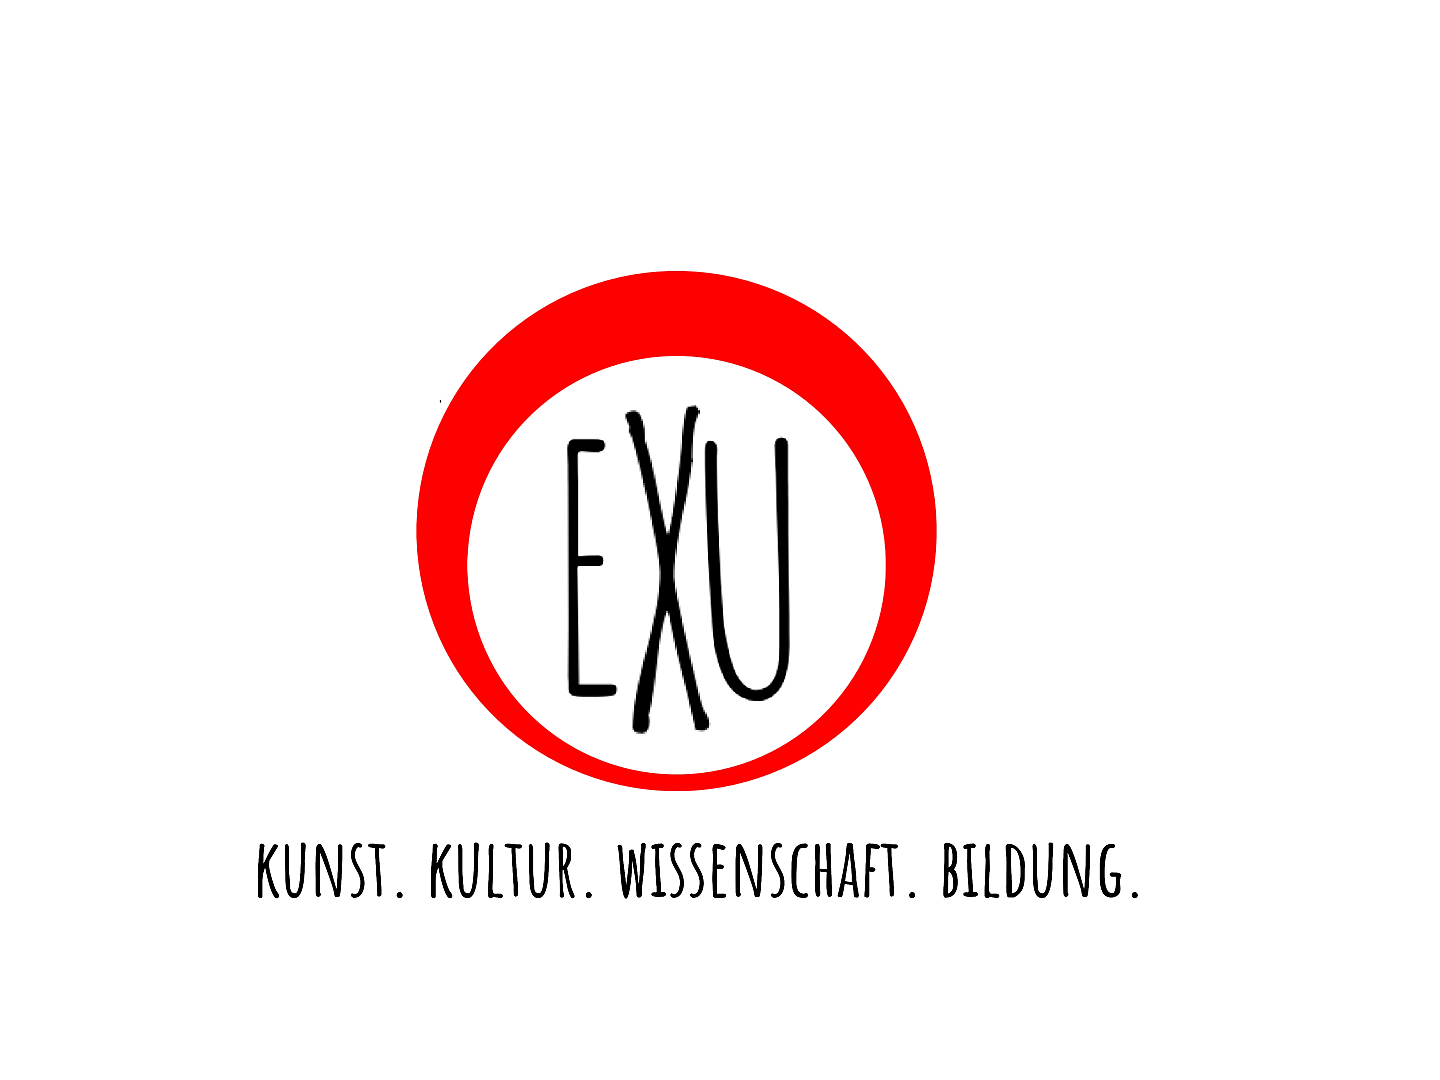 EXU - deutsch-brasilianischer Verein für Kunst, Kultur, Wissenschaft und Bildung e.V.